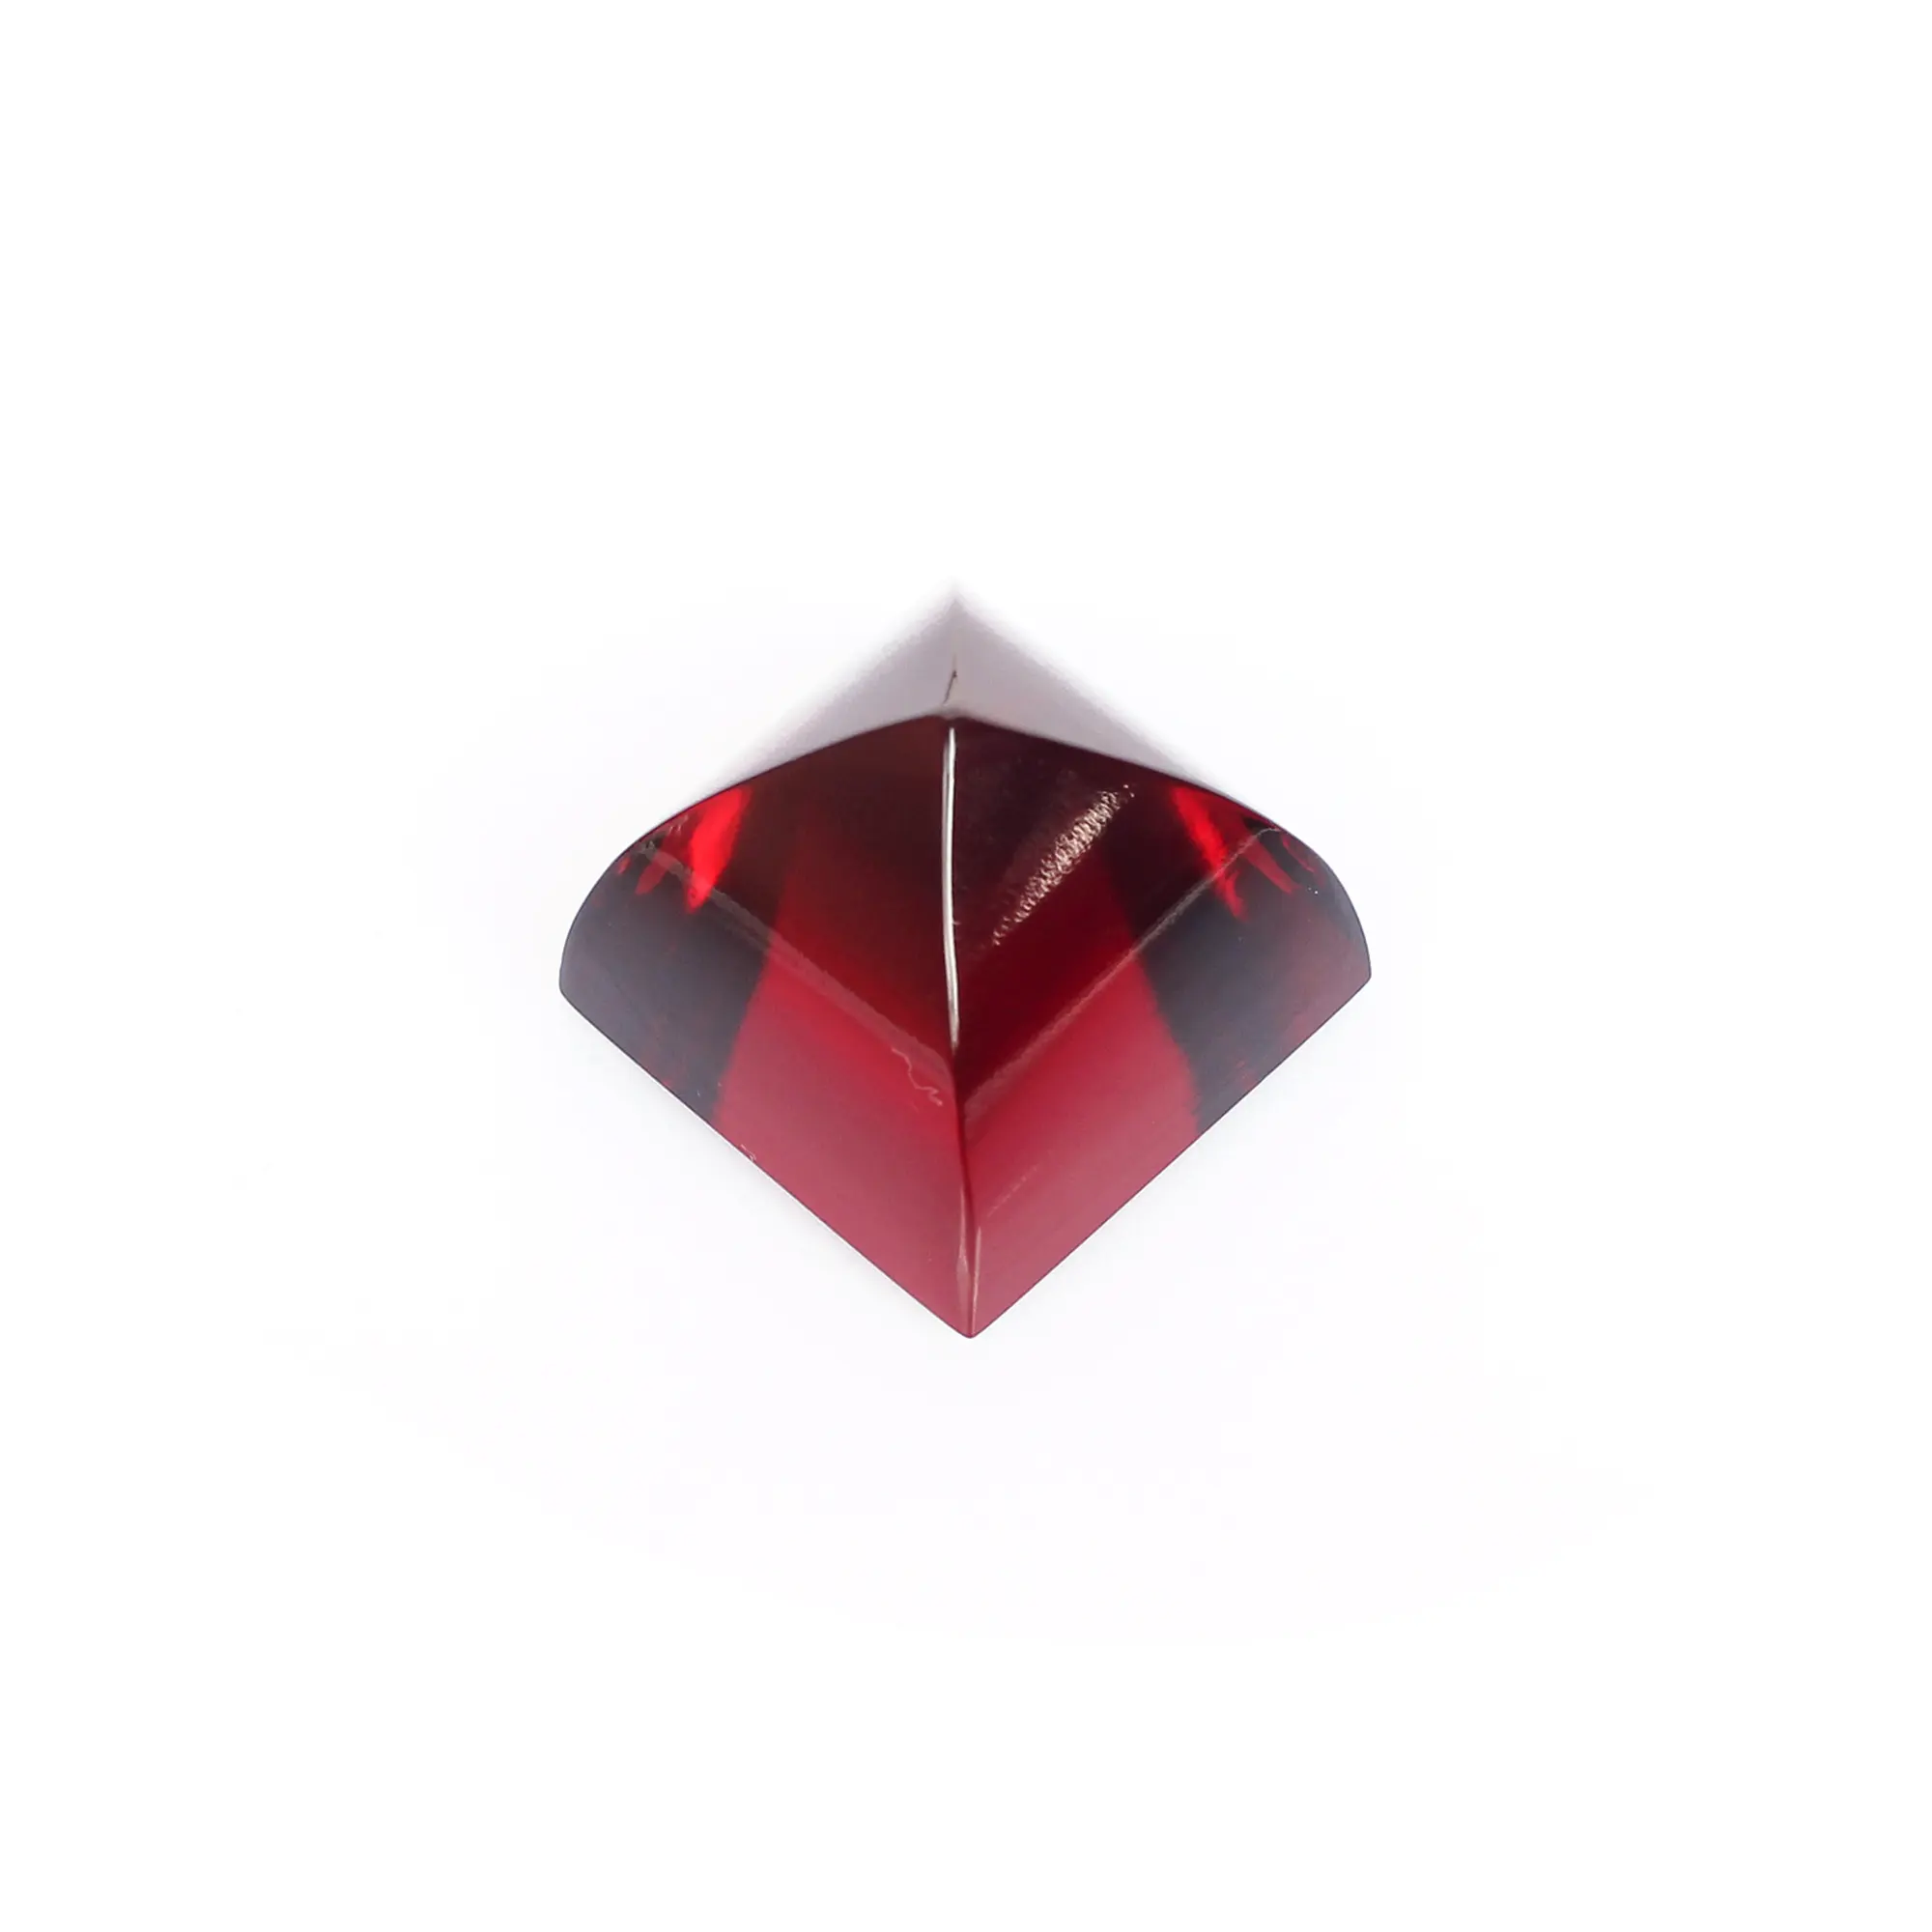 Garnet Hydro 18x15 мм пирамидальный 44,00 Cts драгоценный камень для изготовления ювелирных изделий